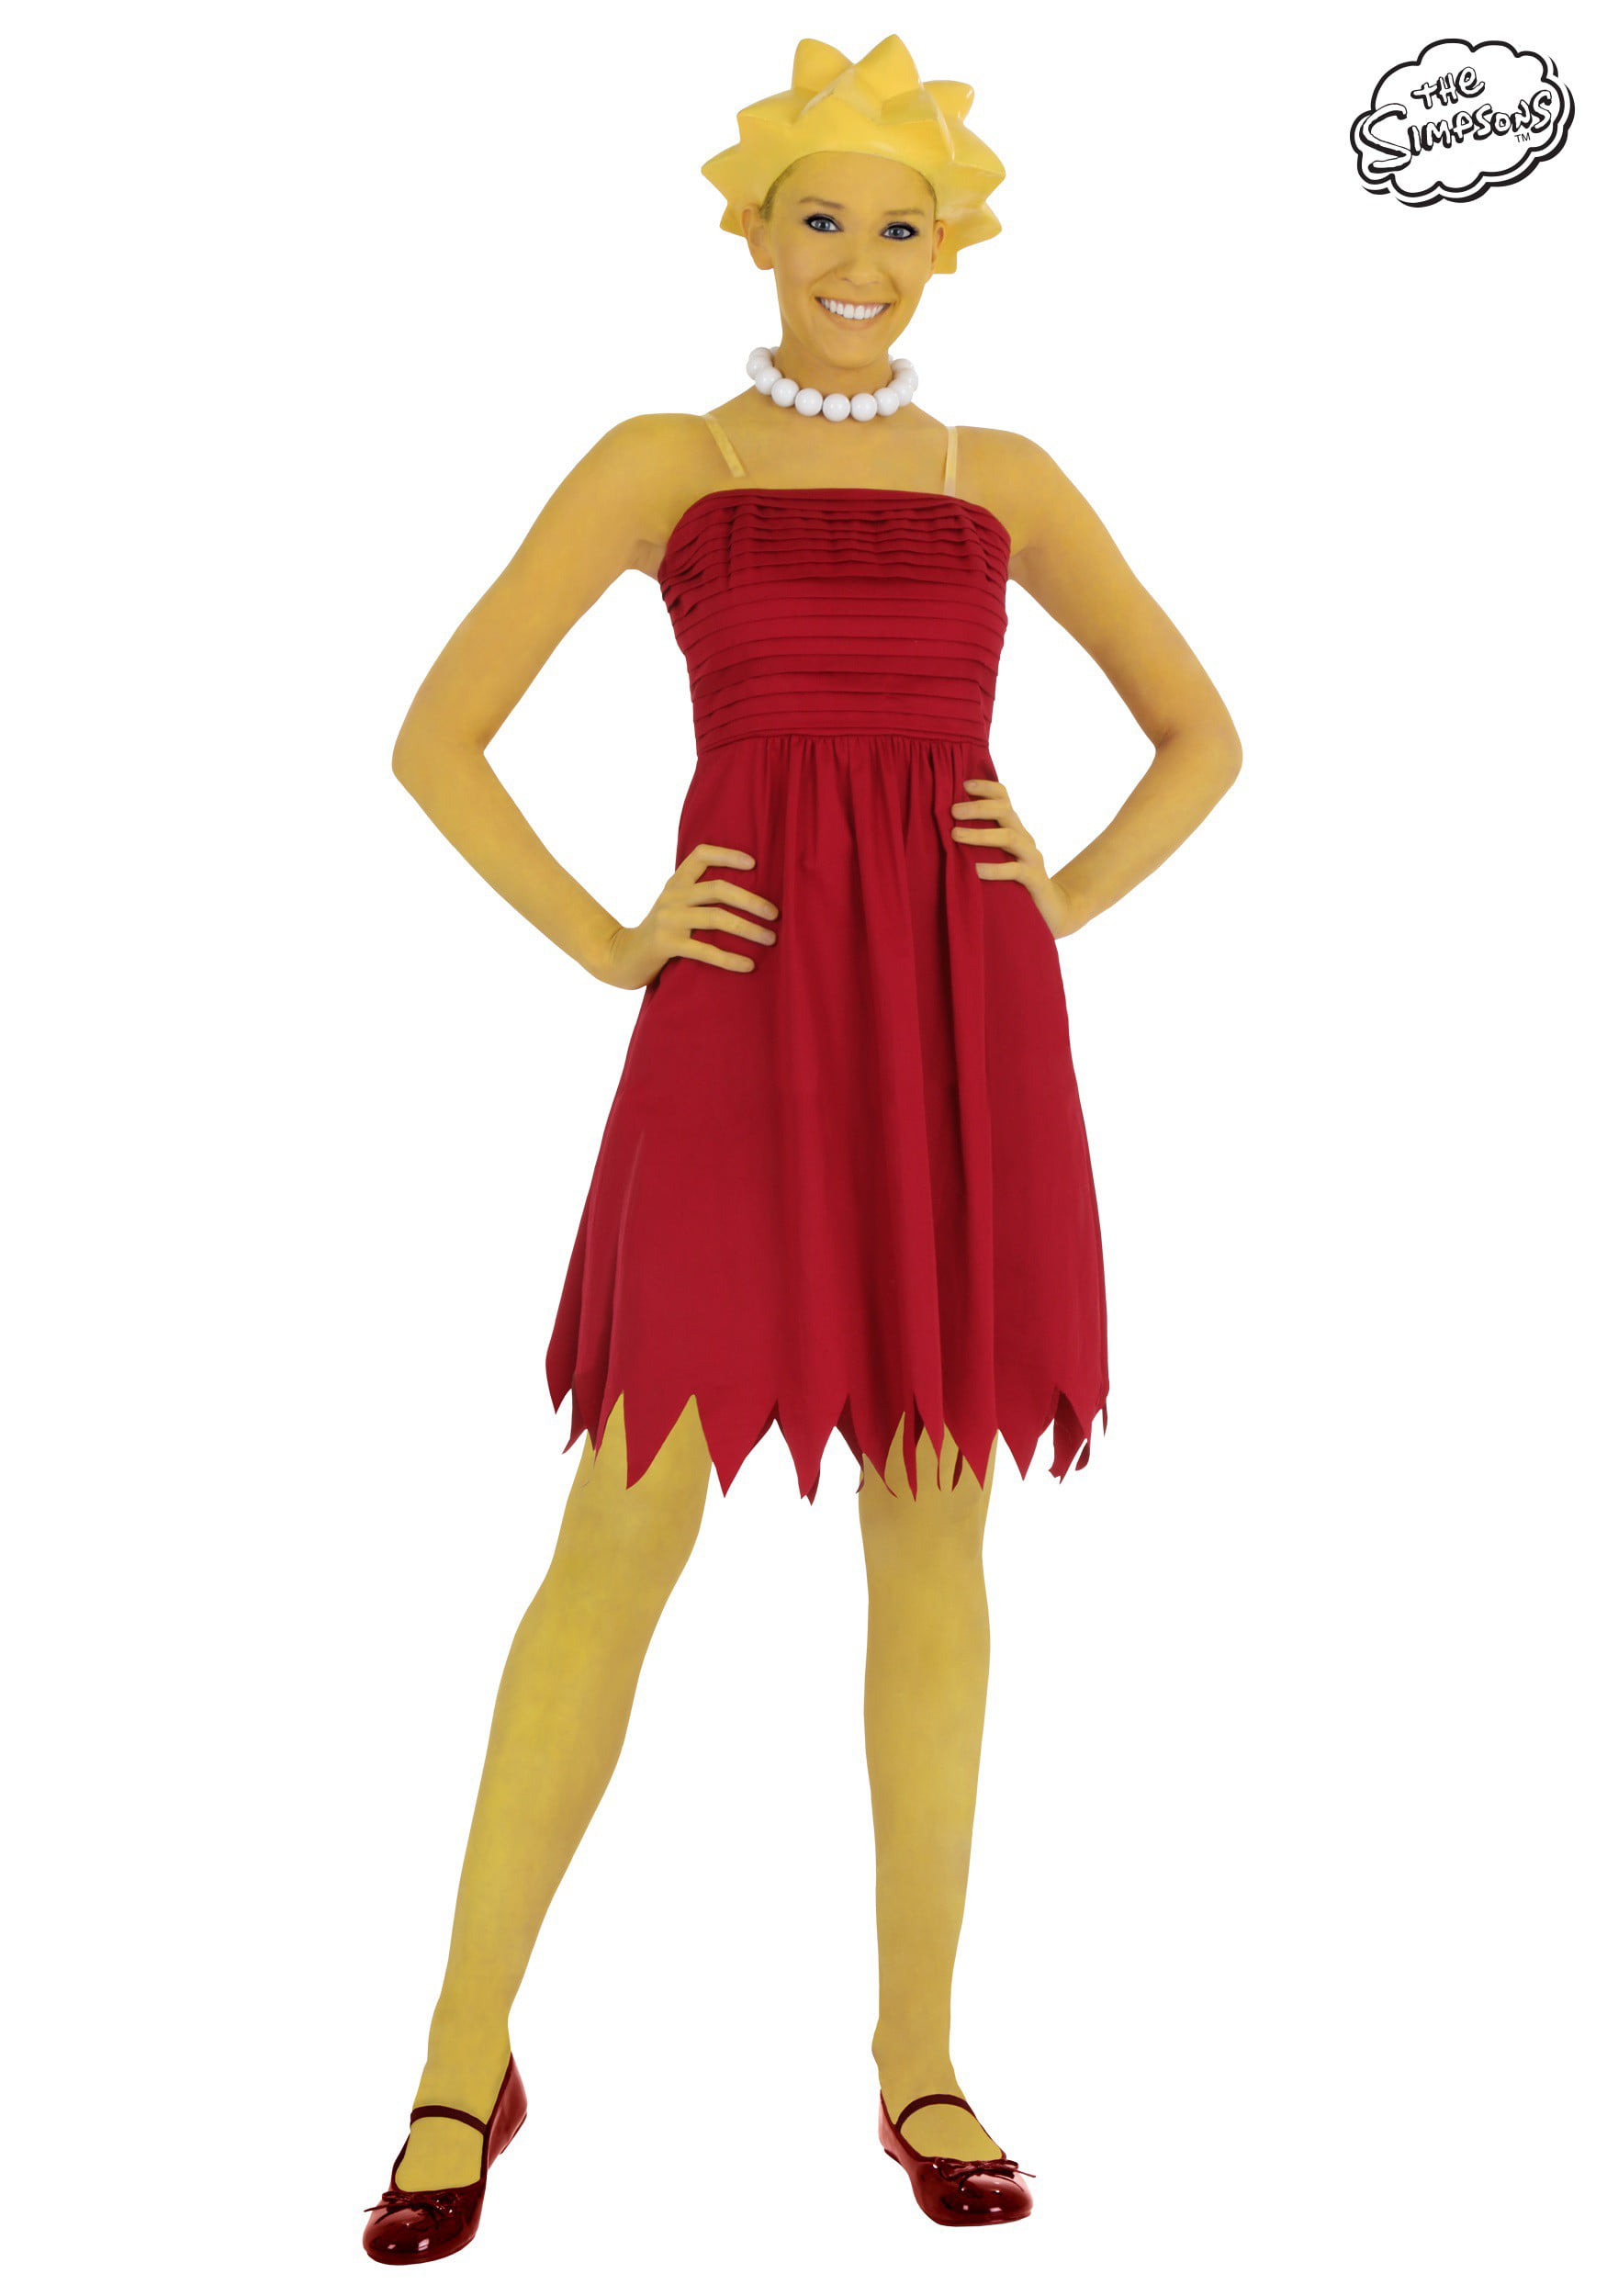 Buy Adult Lisa Simpson Costume at Walmart.com.